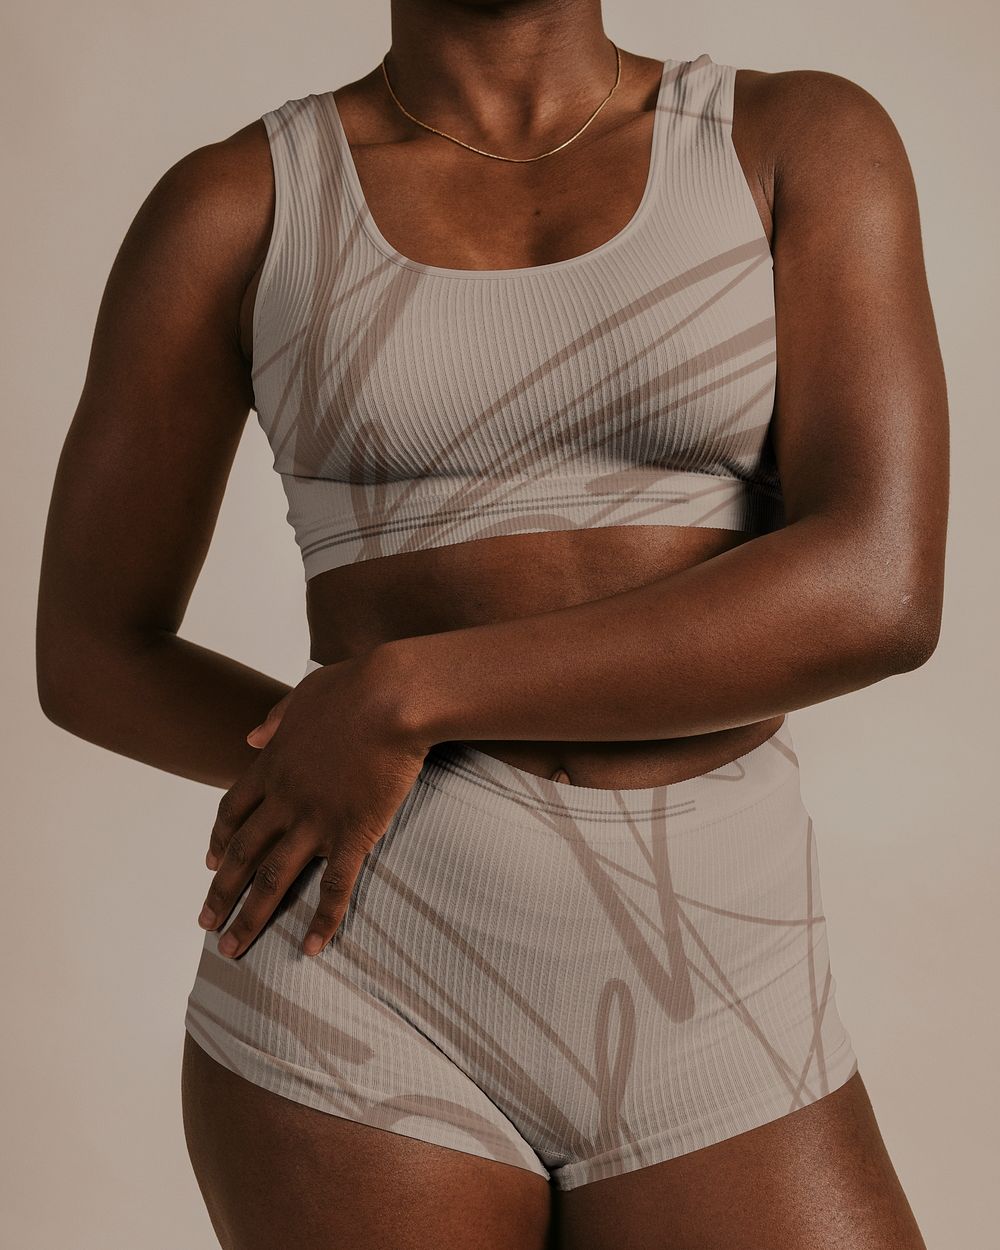 African American woman wearing sportswear, studio shoot